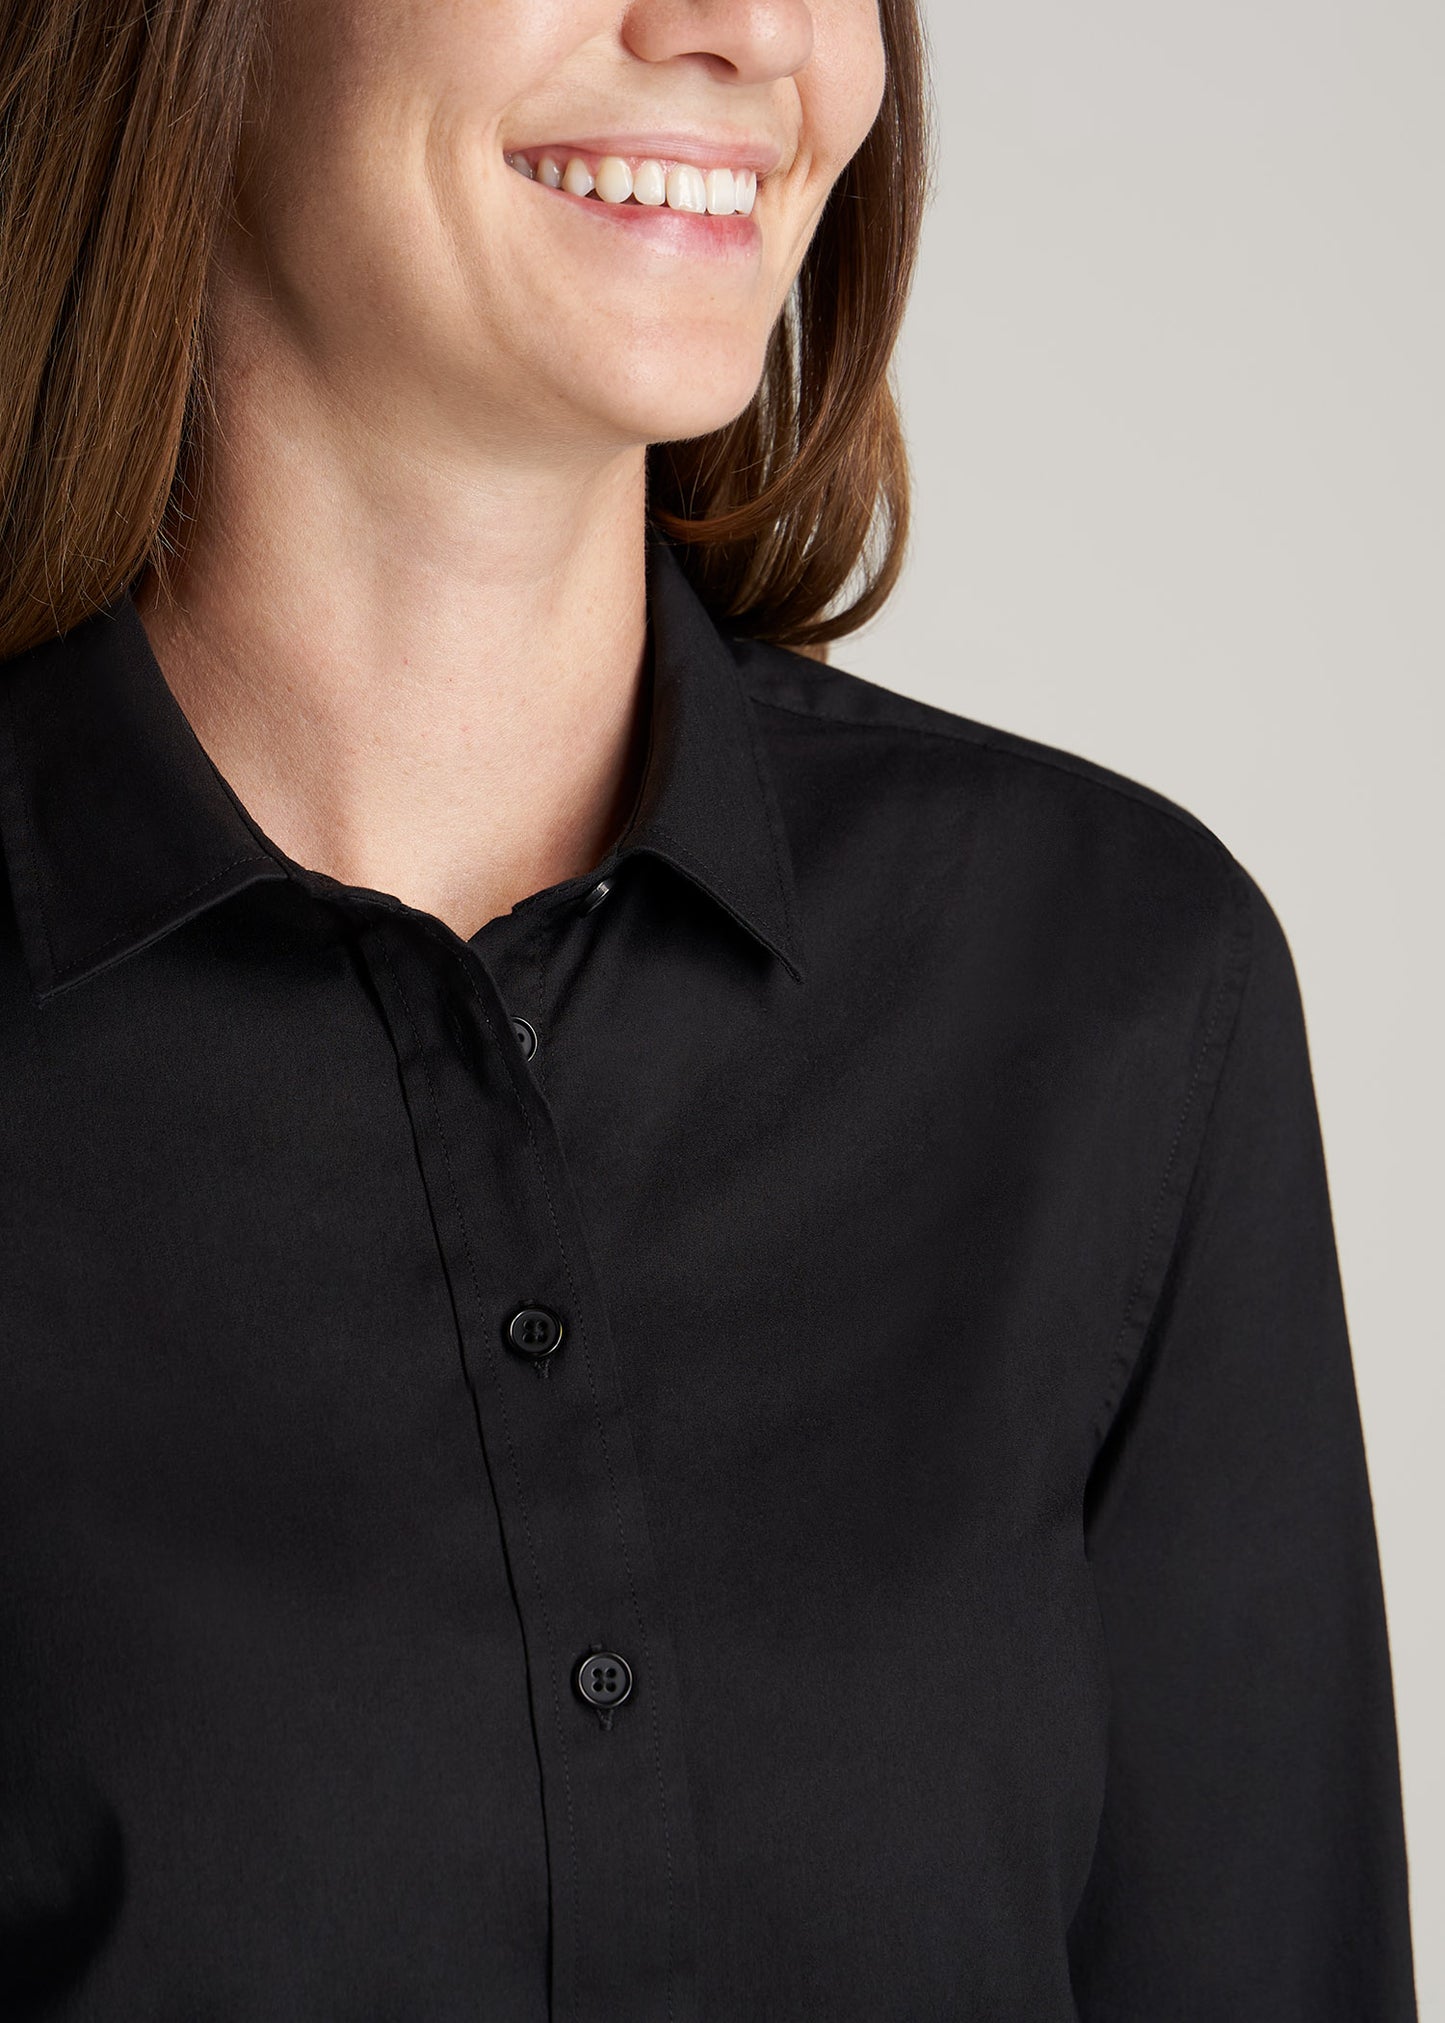       American-Tall-Women-Button-Up-Dress-Shirt-Black-detail